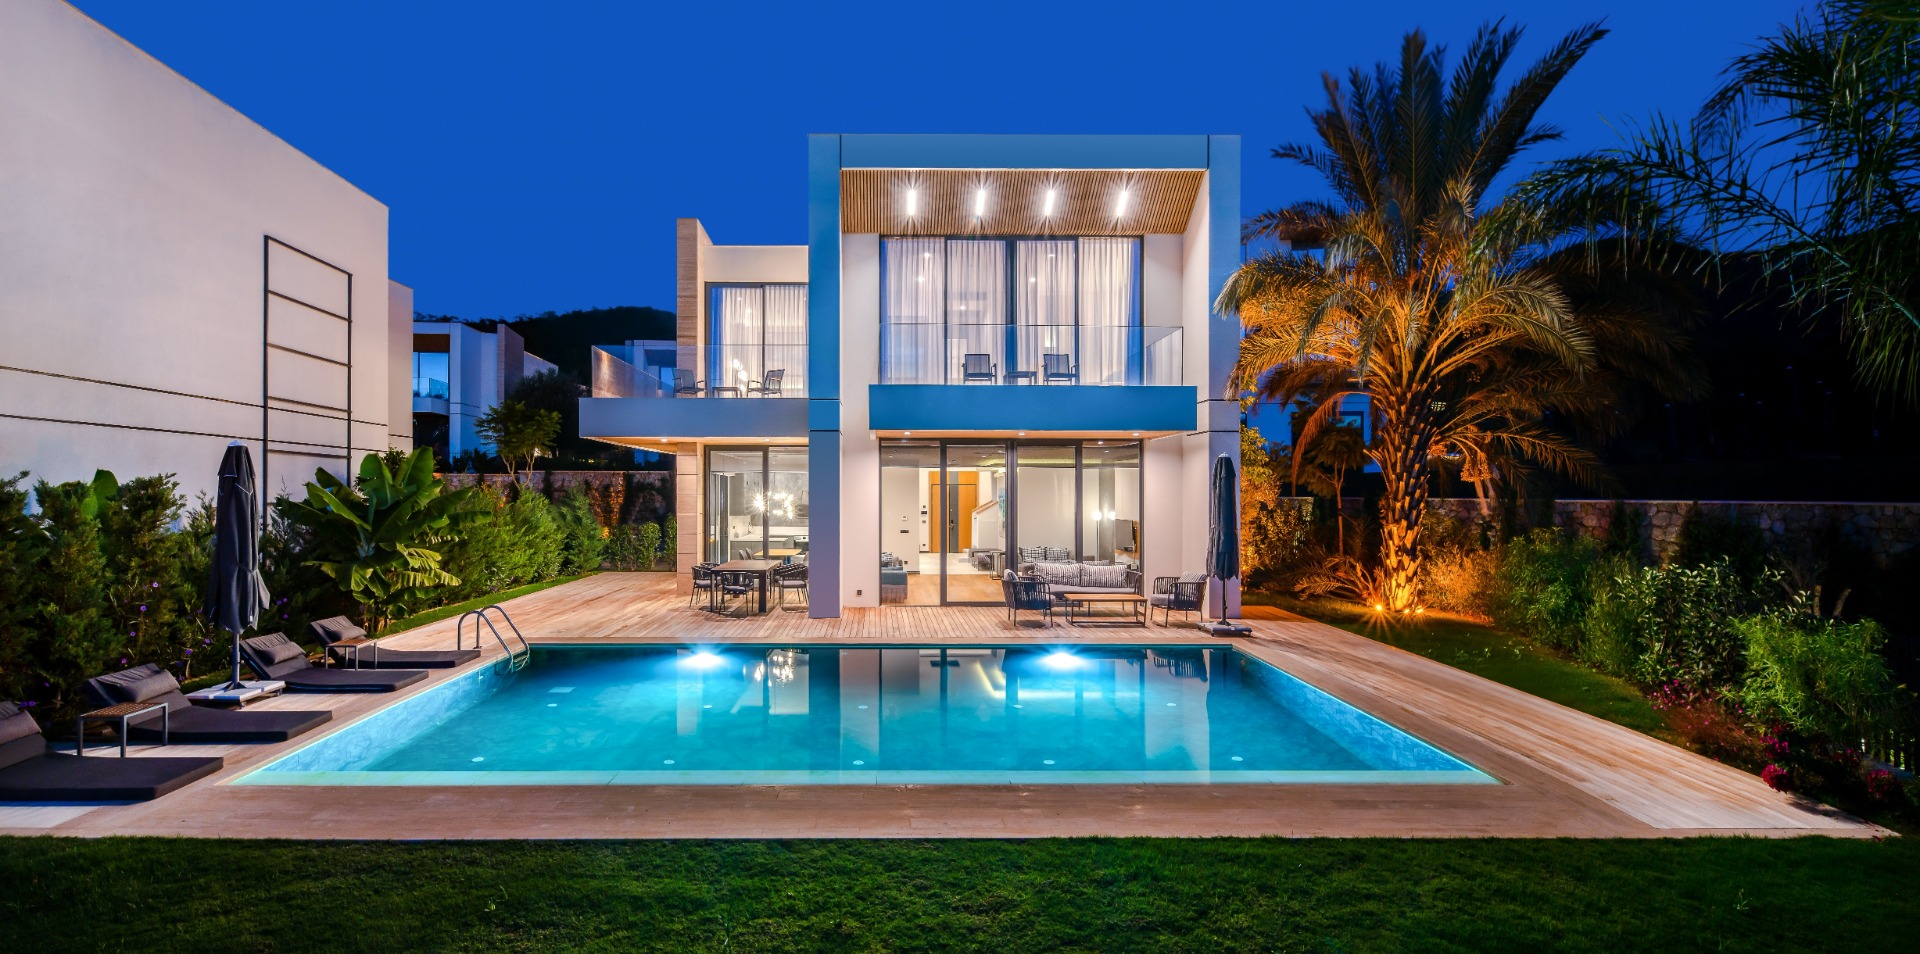 Turizm yön değiştiriyor: ‘Villa satışları oda satışlarının üzerine çıktı’  